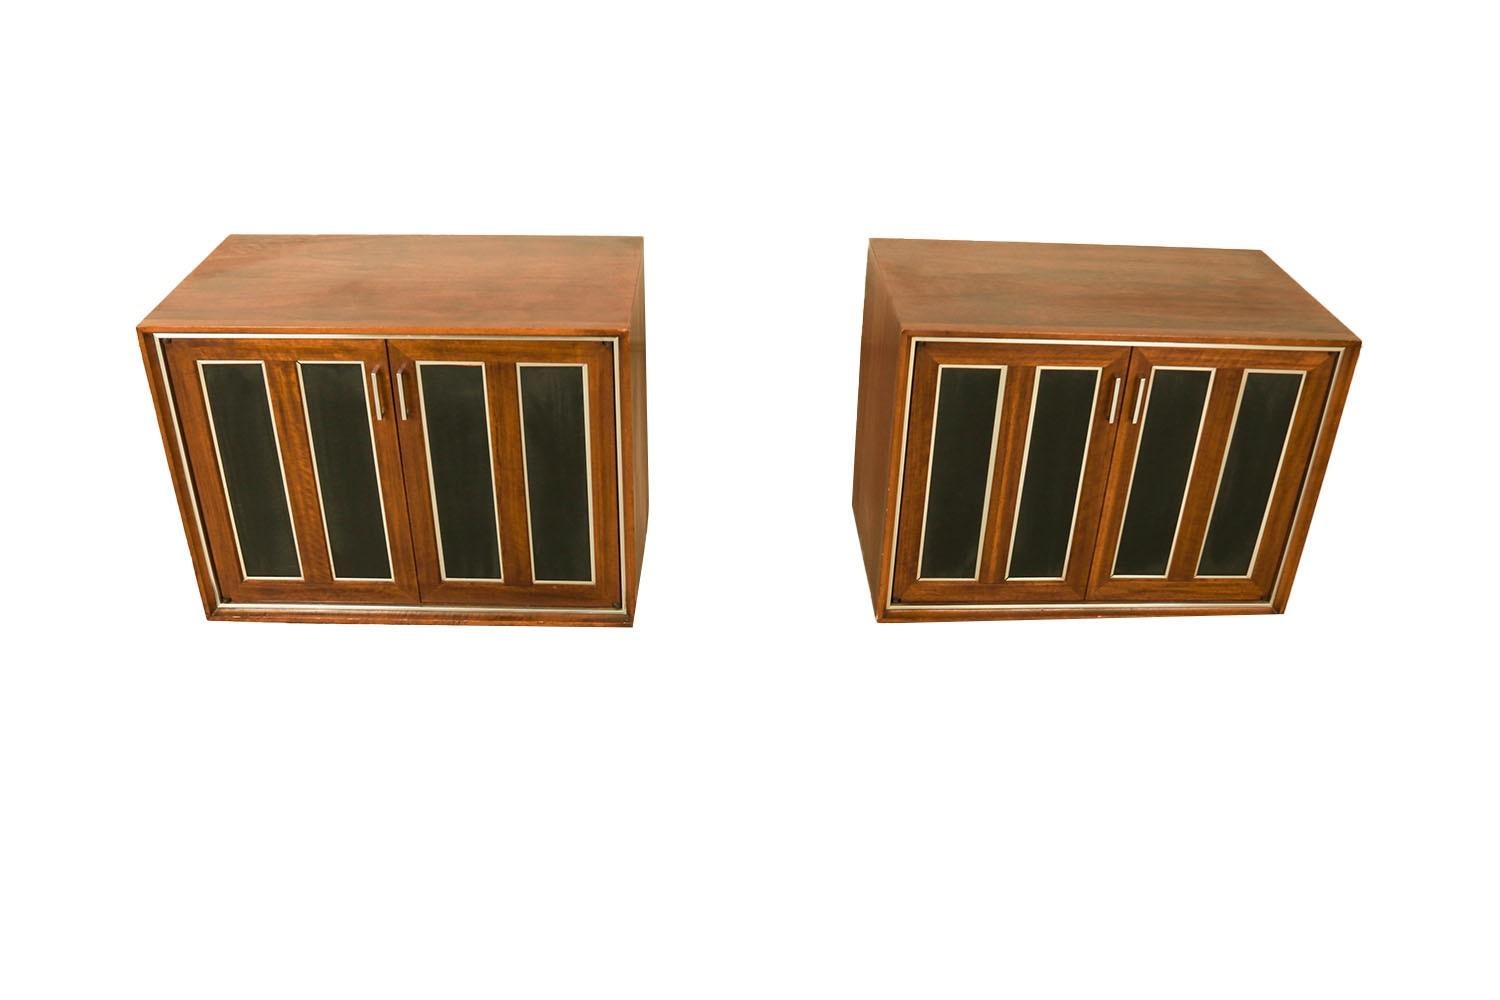 Außergewöhnliches Paar von Mid-Century Modern Doppeltür Schränke / Nachttische von Lane Furniture. Dieses Retro-Paar wurde mit erstklassigen Beschlägen und exzellent verarbeiteten Holzteilen ausgestattet. Sie bestehen jeweils aus einem